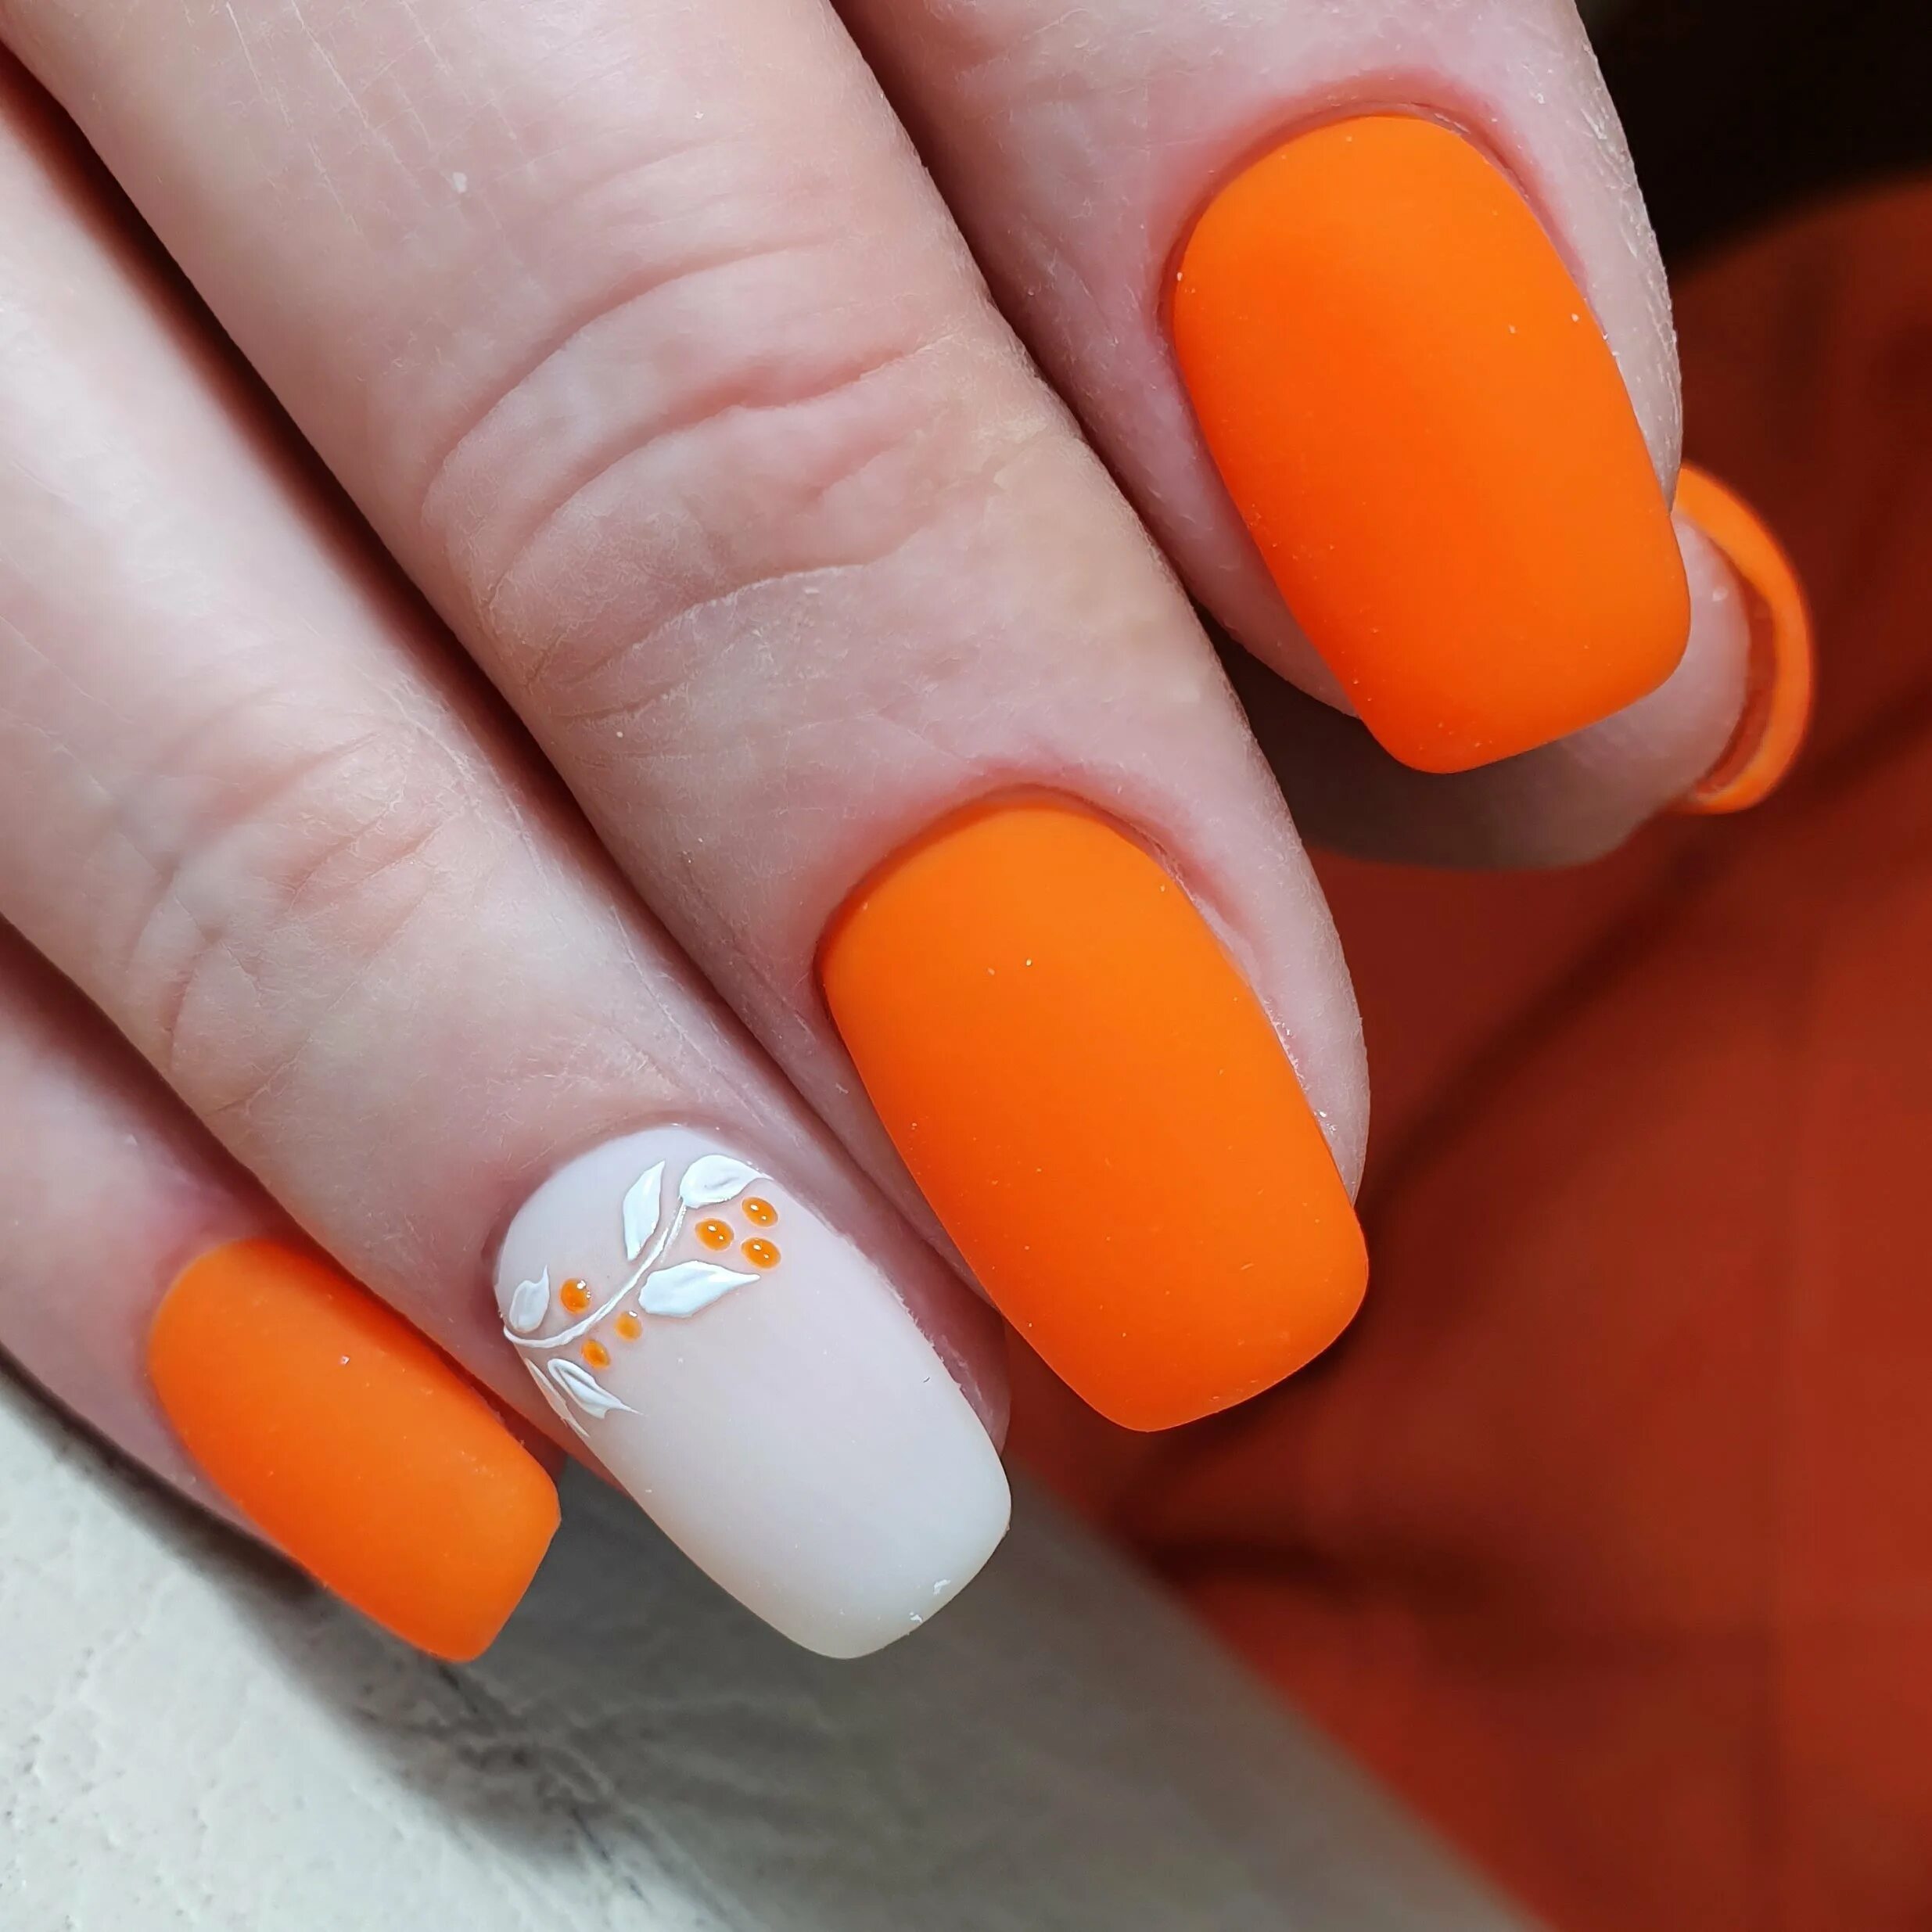 Оранжевый 1 1 20 август 2021. Яркие оранжевые ногти. Яркий оранжевый маникюр. Маникюр с оранжевым цветом. Оранжевые ногти маникюр.